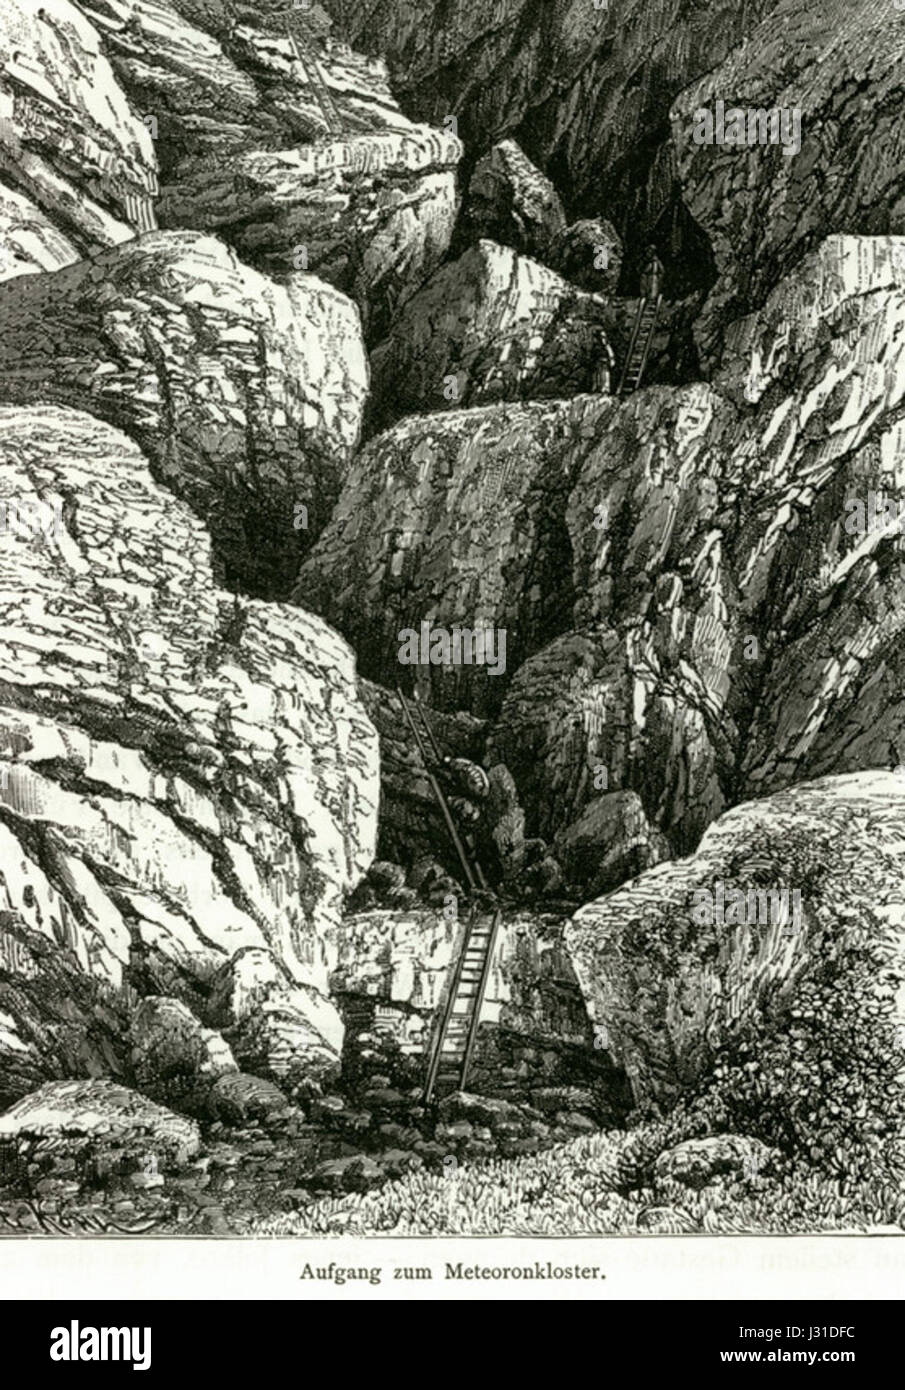 Aufgang zu Meteoronkloster - Schweiger Lerchenfeld Amand (Freiherr von) - 1887 Banque D'Images